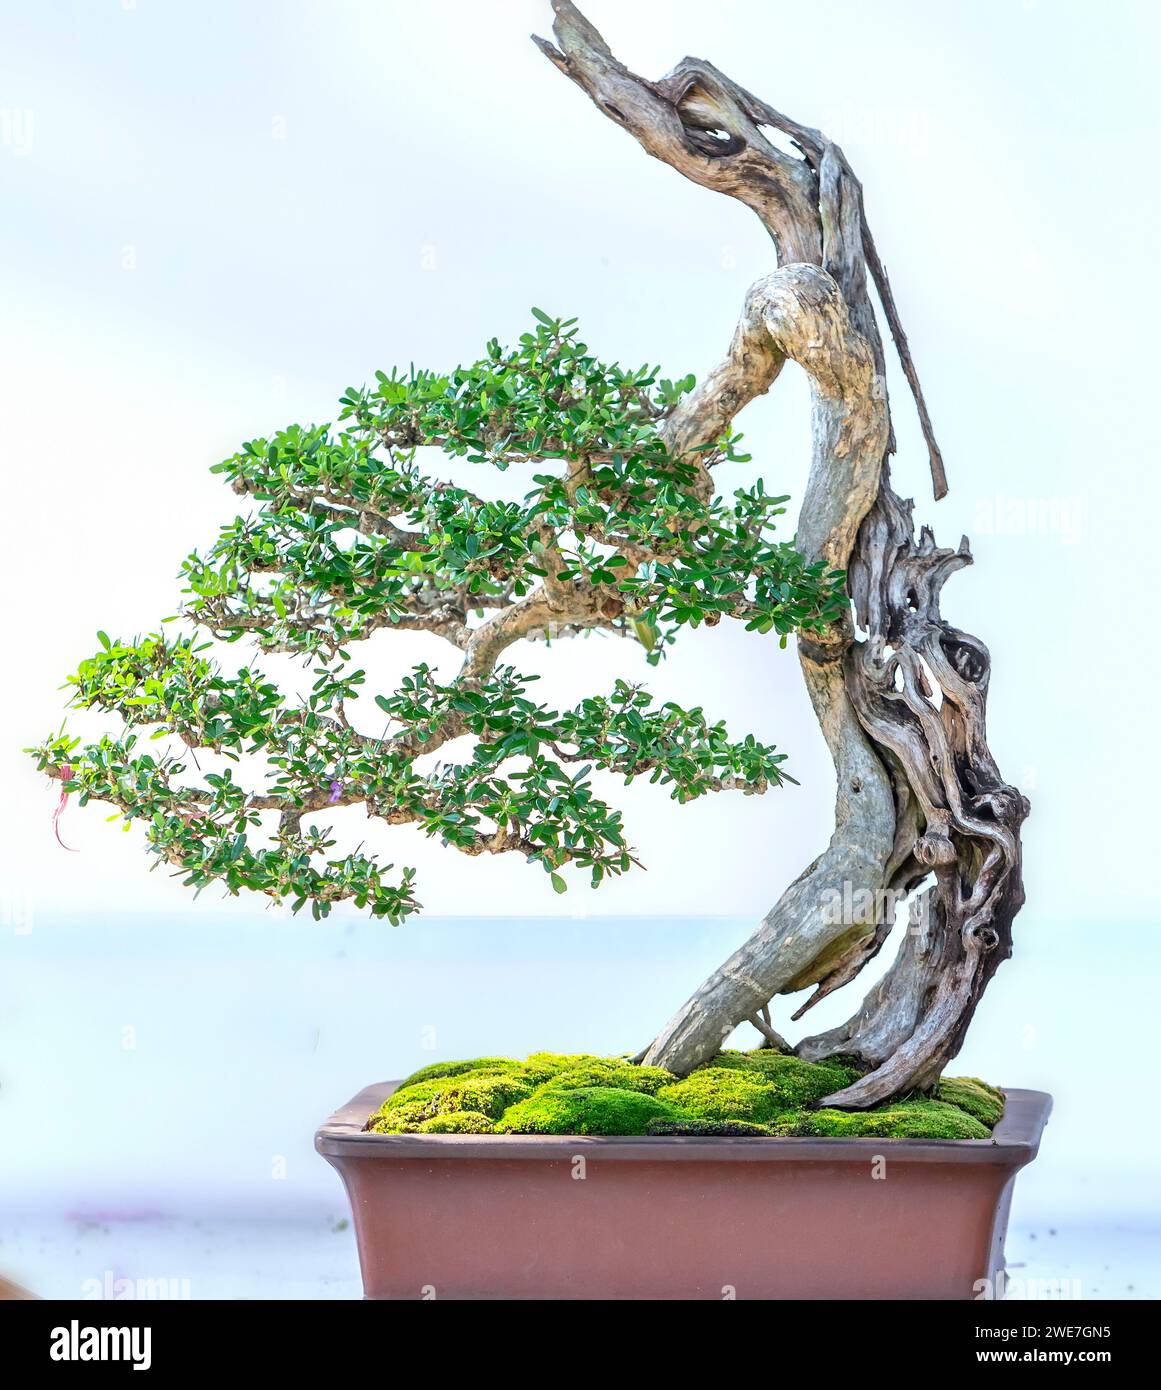 Bonsaibaum isoliert auf weißem Hintergrund in einer Topfpflanze mit vielen verschiedenen einzigartigen Formen, die eine Abstraktion im Leben symbolisieren, die der Mensch überleben muss Stockfoto